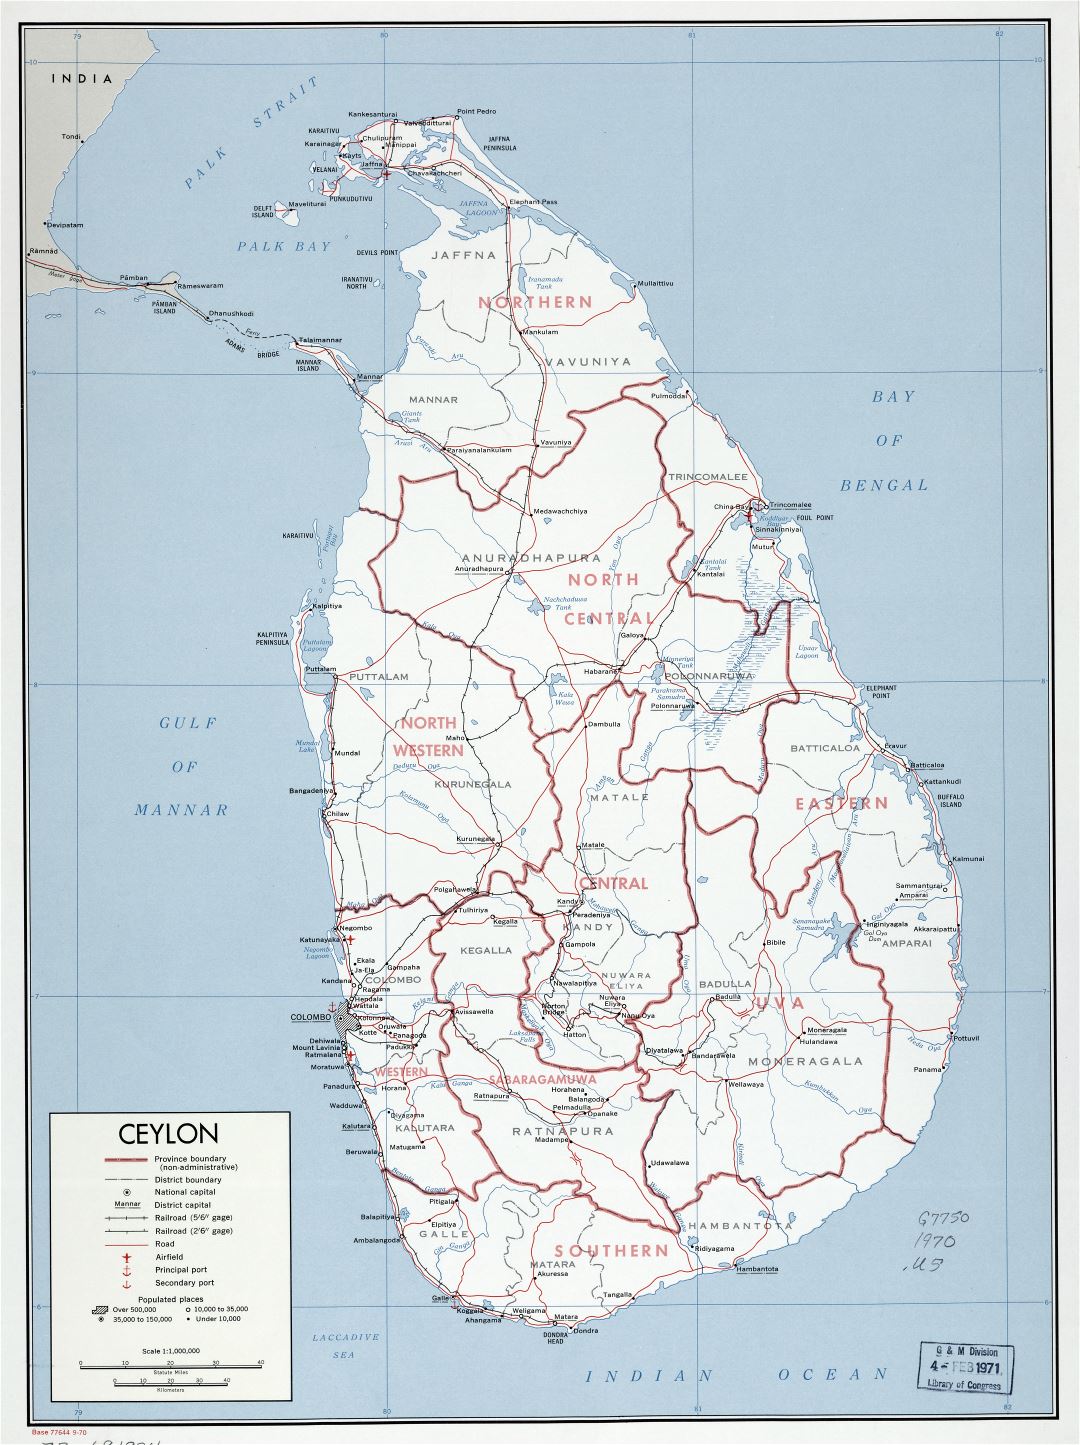 Крупномасштабная детальная политическая и административная карта Шри-Ланки (Цейлона) с дорогами, железными дорогами, портами, аэропортами и городами - 1970